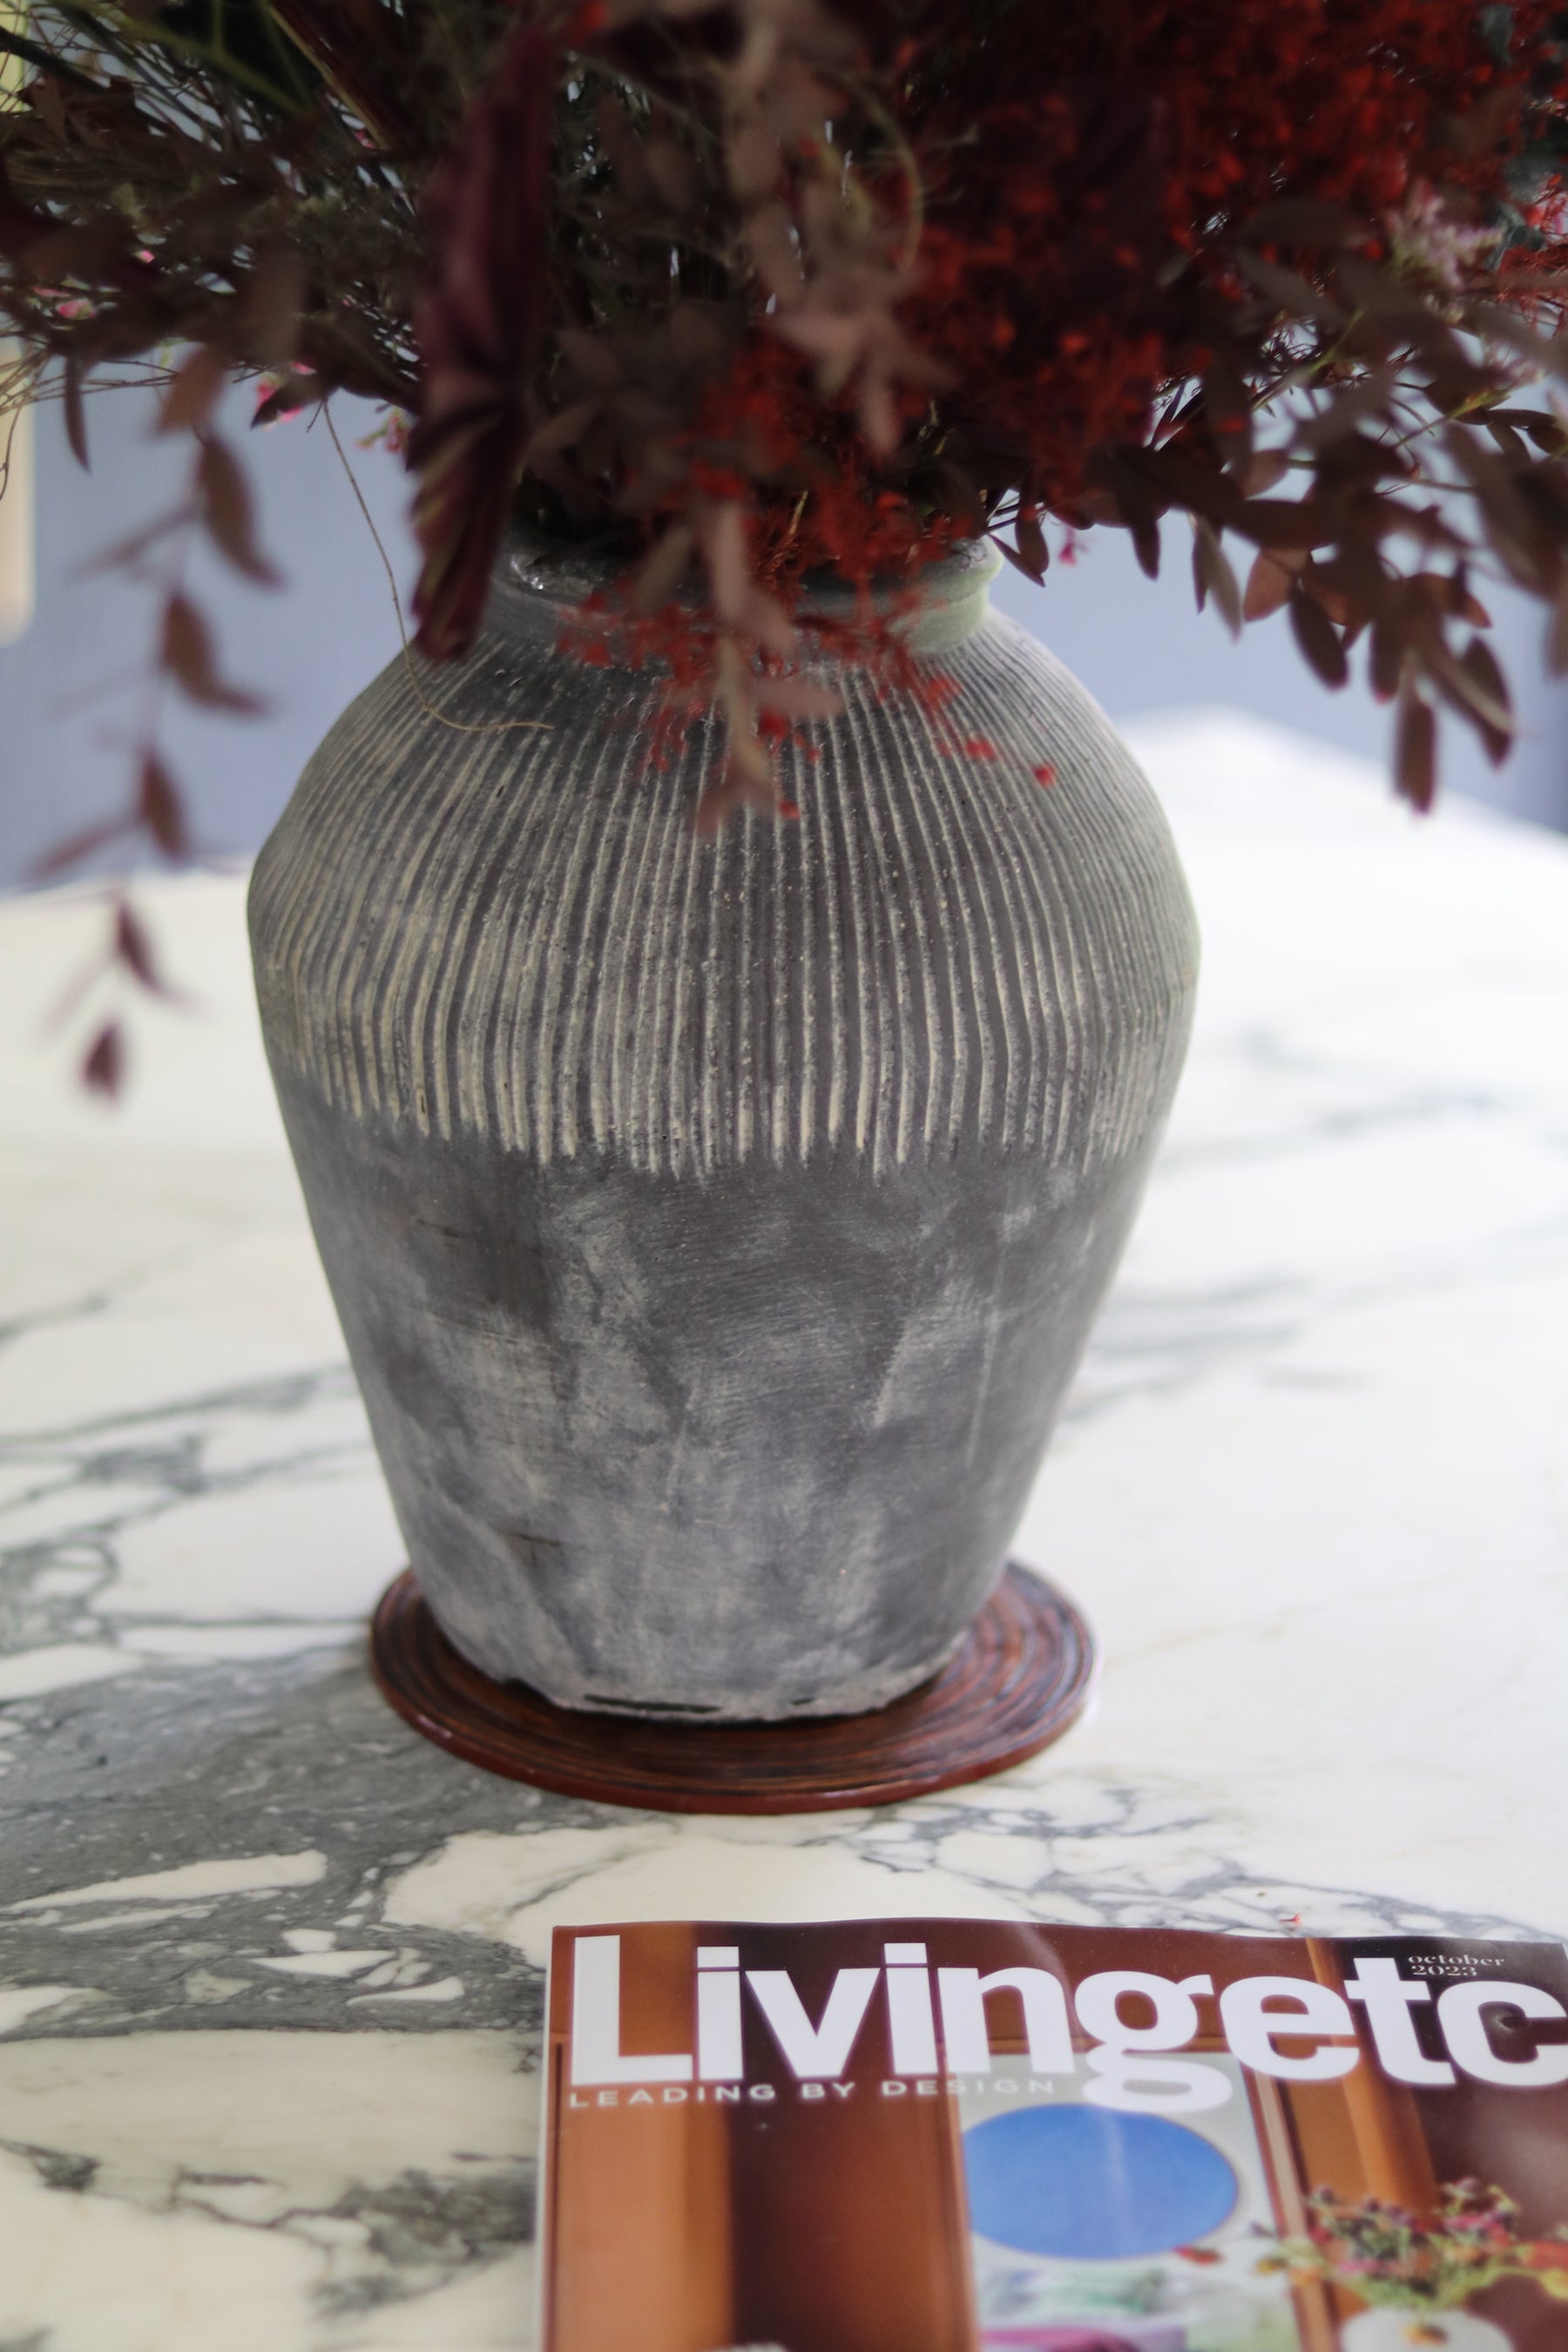 Dark Stone Pot Vase (Heavy Duty)